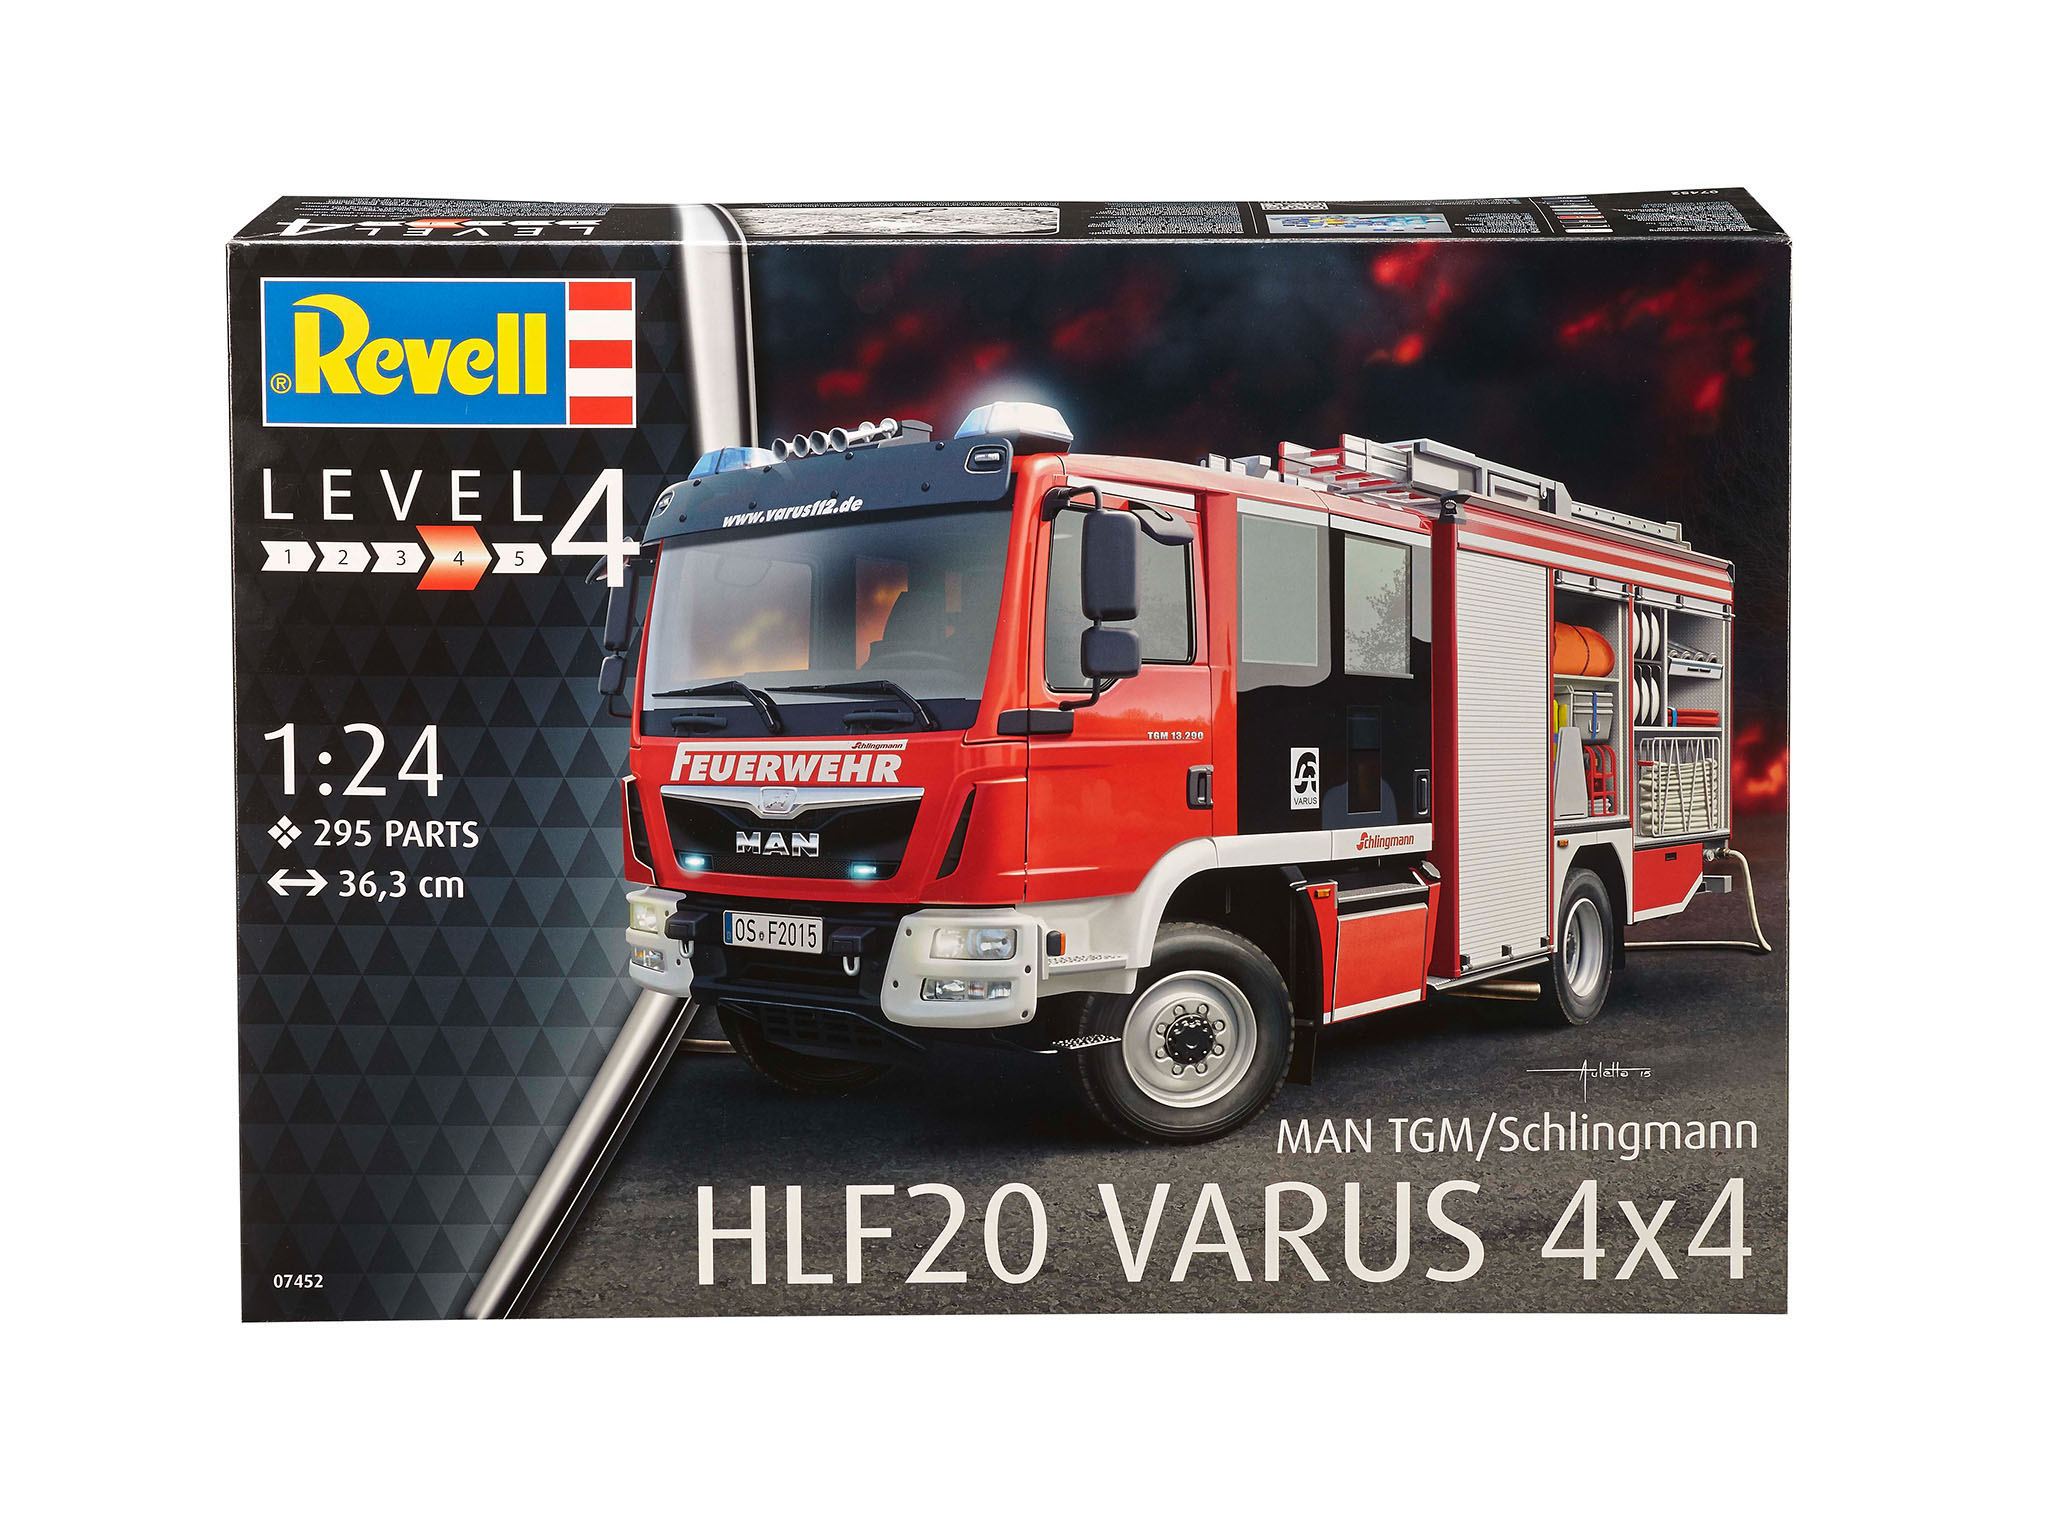 REVELL 07452 MAN/Schlingmann HLF 20 Bausatz, 4x4 Mehrfarbig Varus